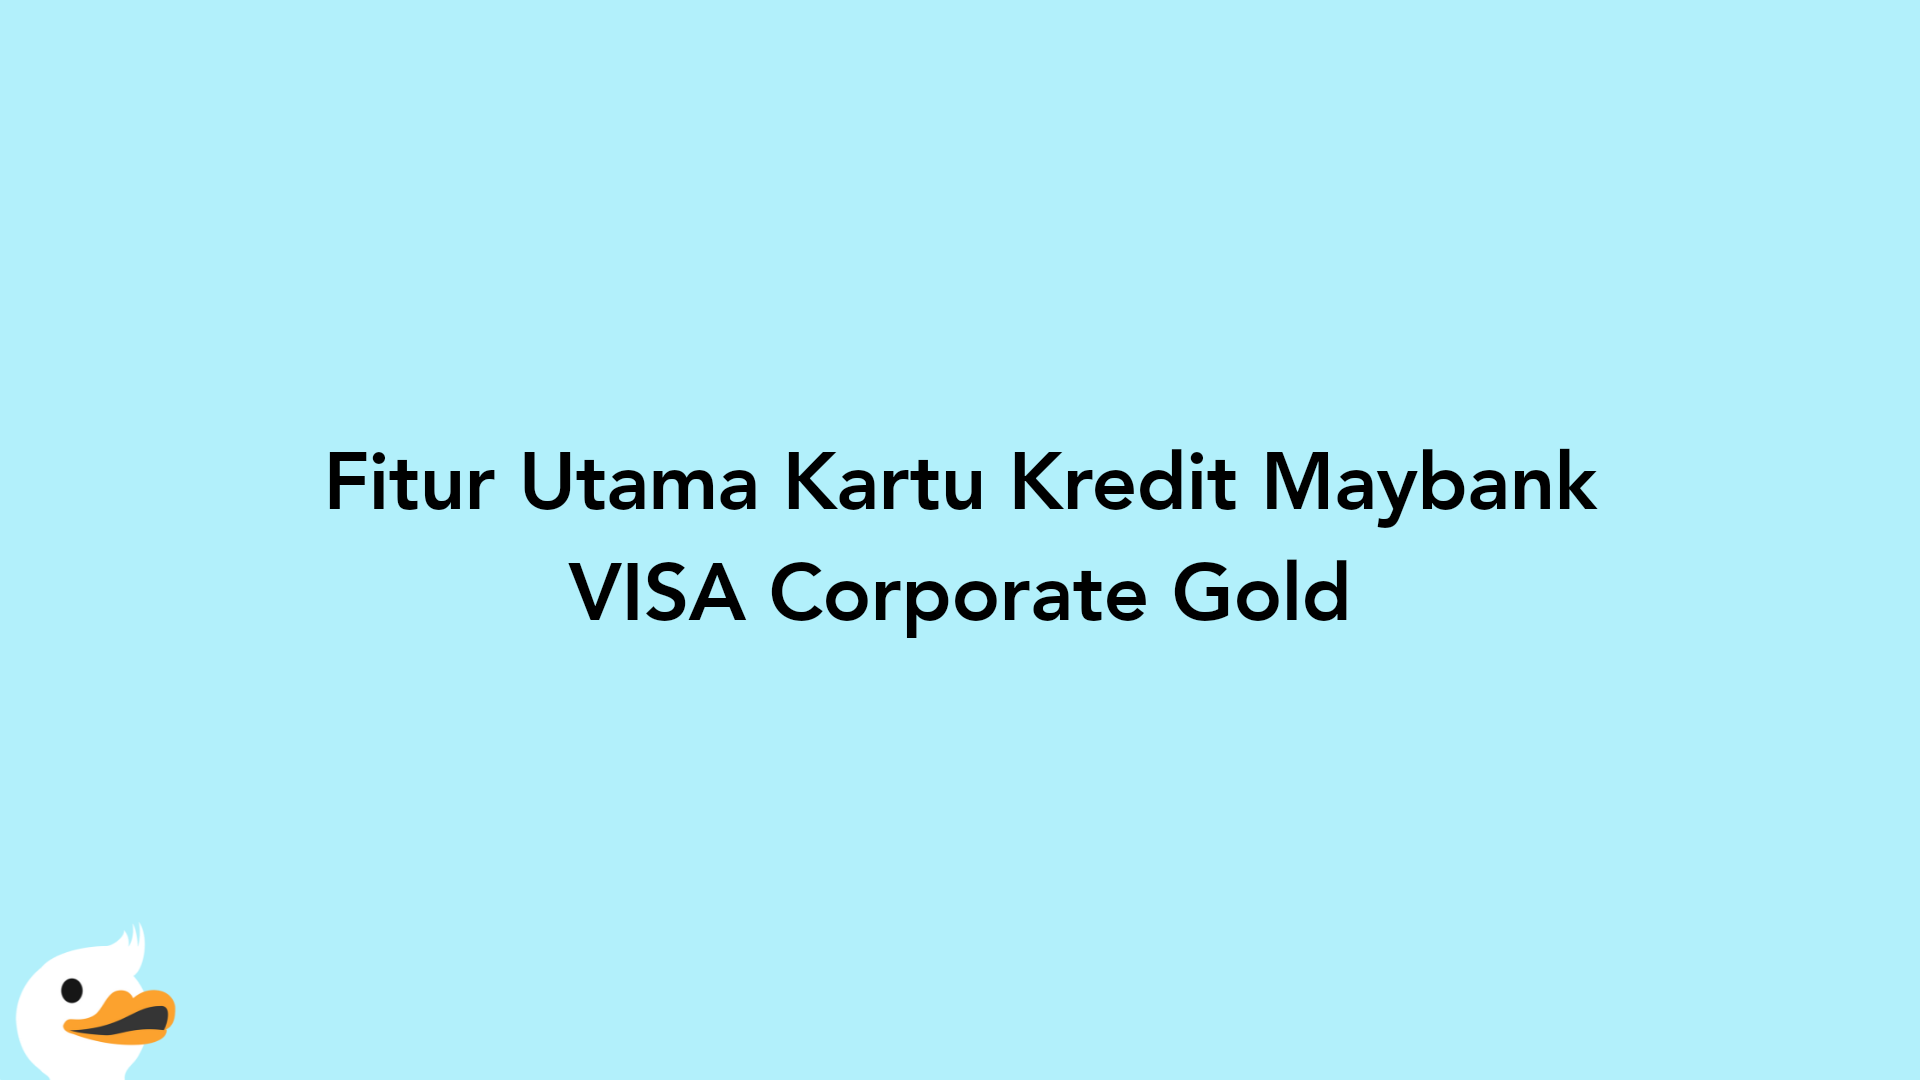 Fitur Utama Kartu Kredit Maybank VISA Corporate Gold